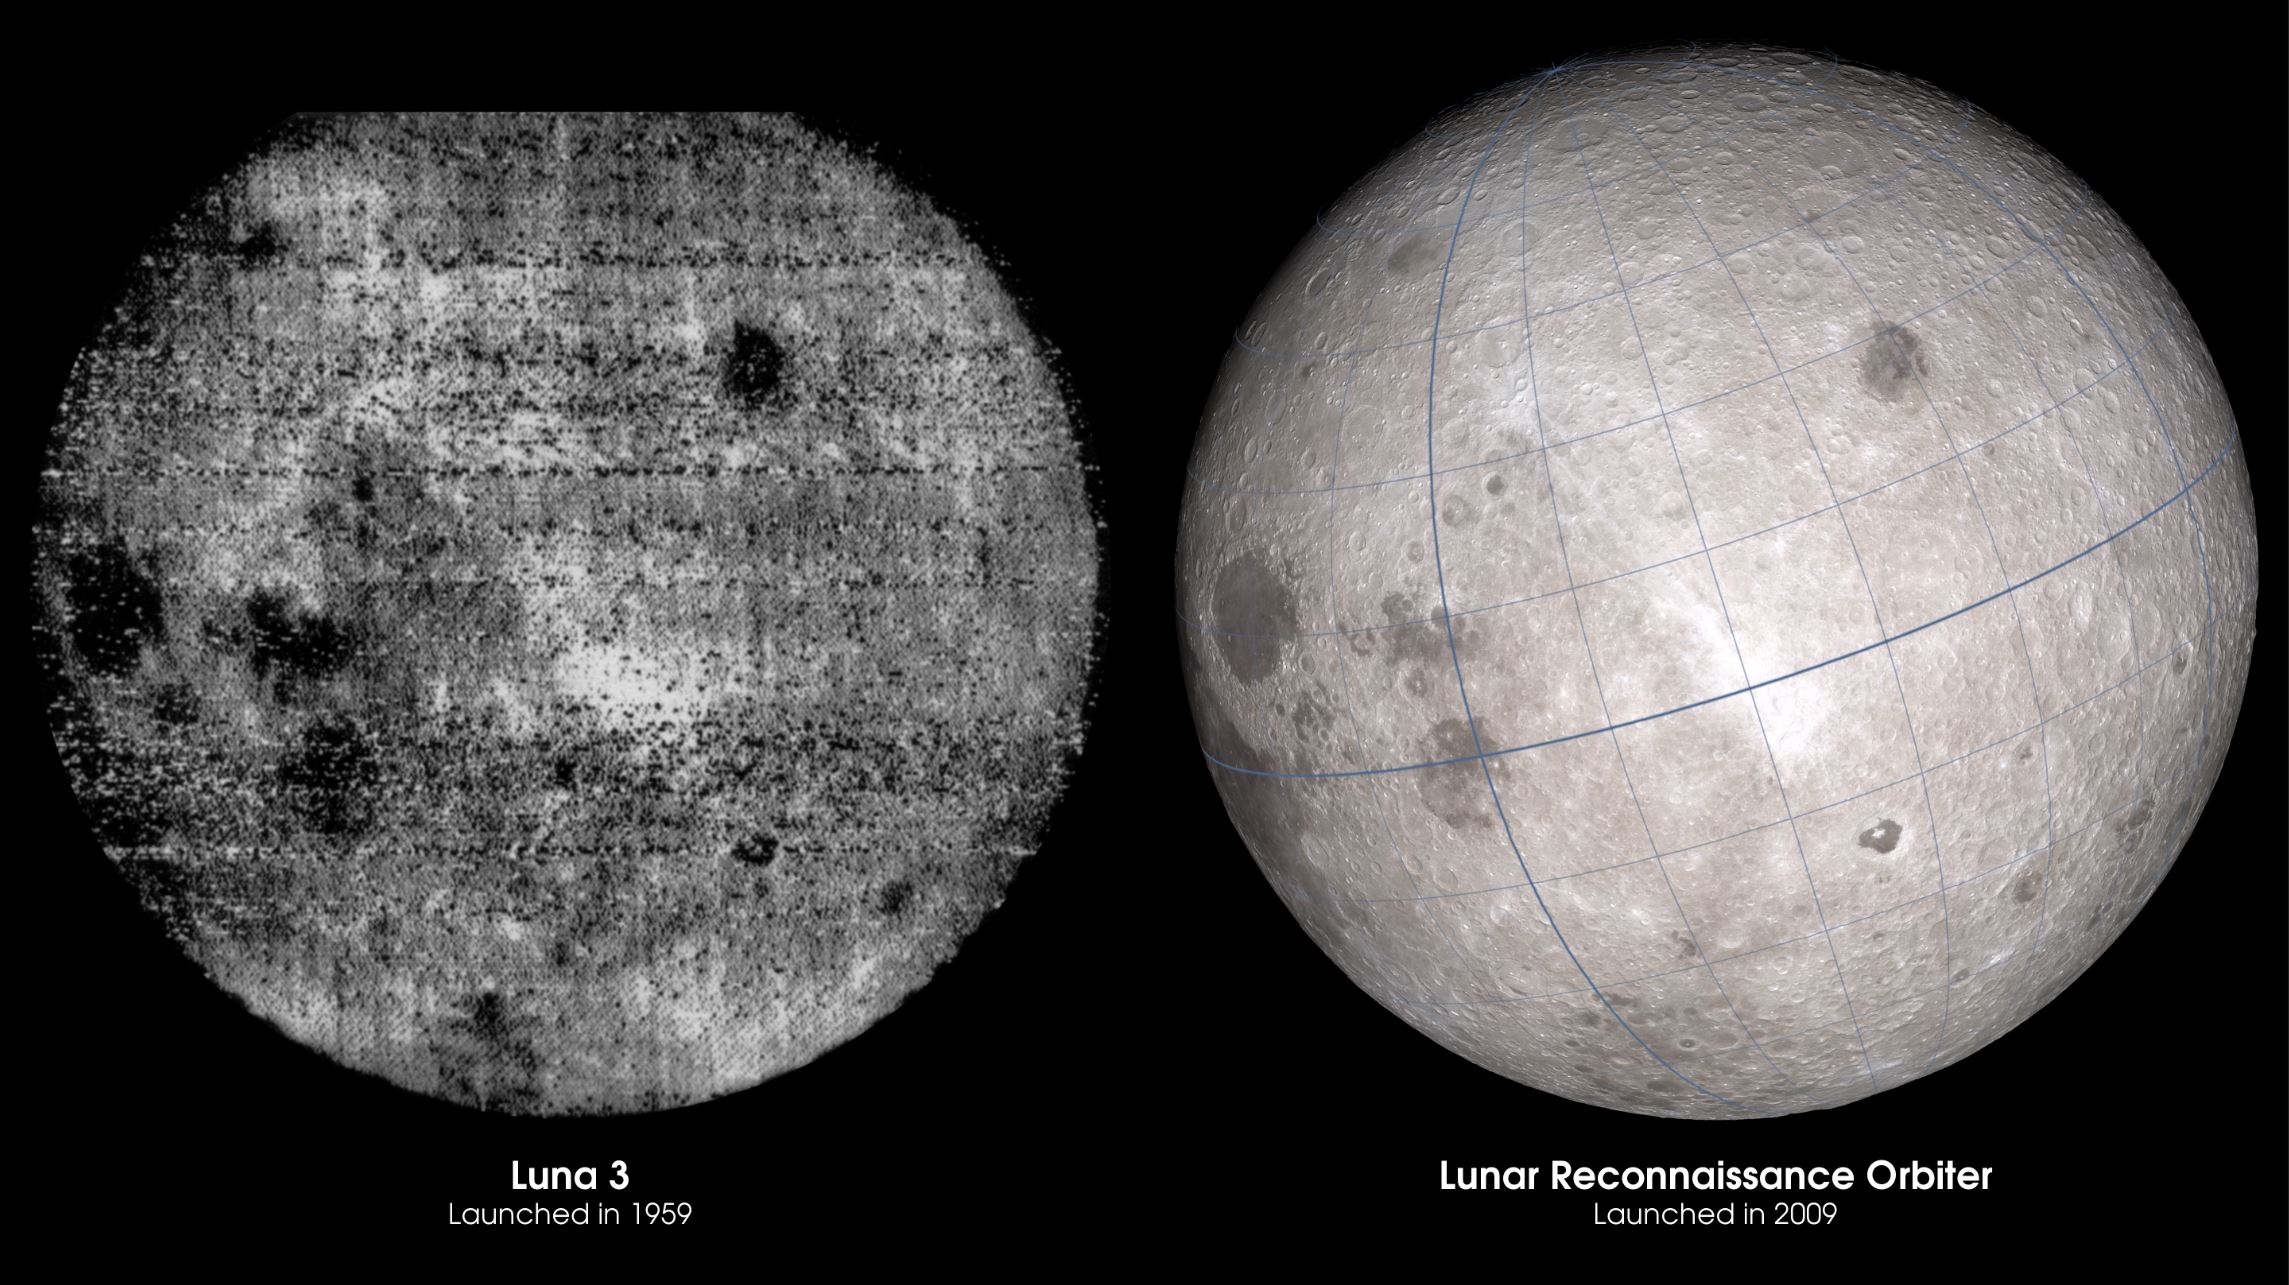 Обратная сторона луны есть. Снимок обратной стороны Луны 1959. Луна 3 снимки обратной стороны Луны. Фото обратной стороны Луны 1959. Первые фотографии обратной стороны Луны 1959.